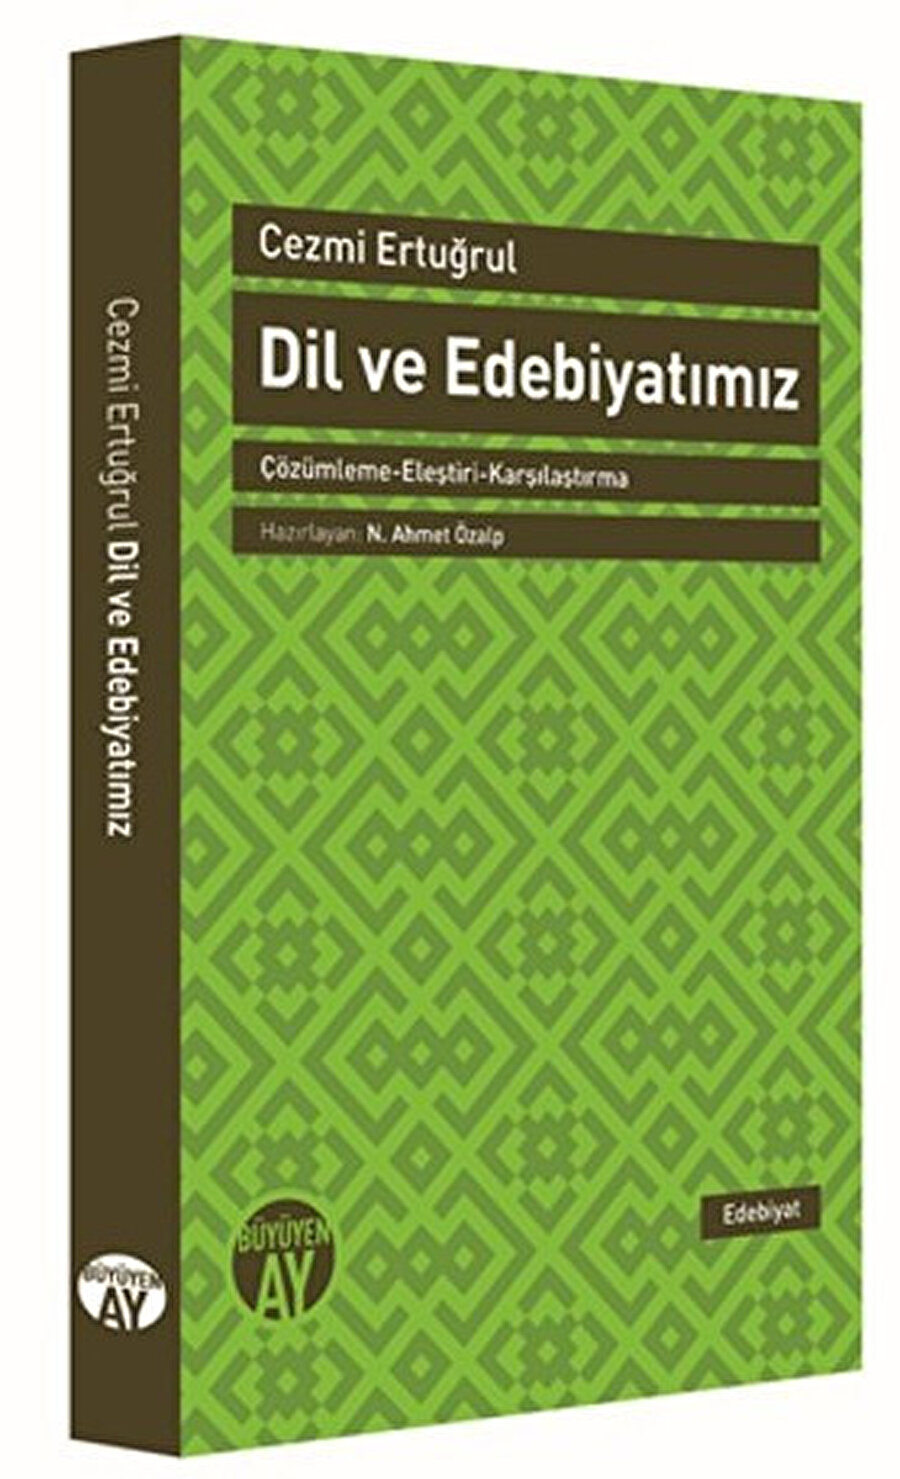 Dil ve Edebiyatımız Çözümleme-Eleştiri-Karşılaştırma Cezmi Ertuğrul Hz. N. Ahmet Özalp Büyüyen Ay Yayınları